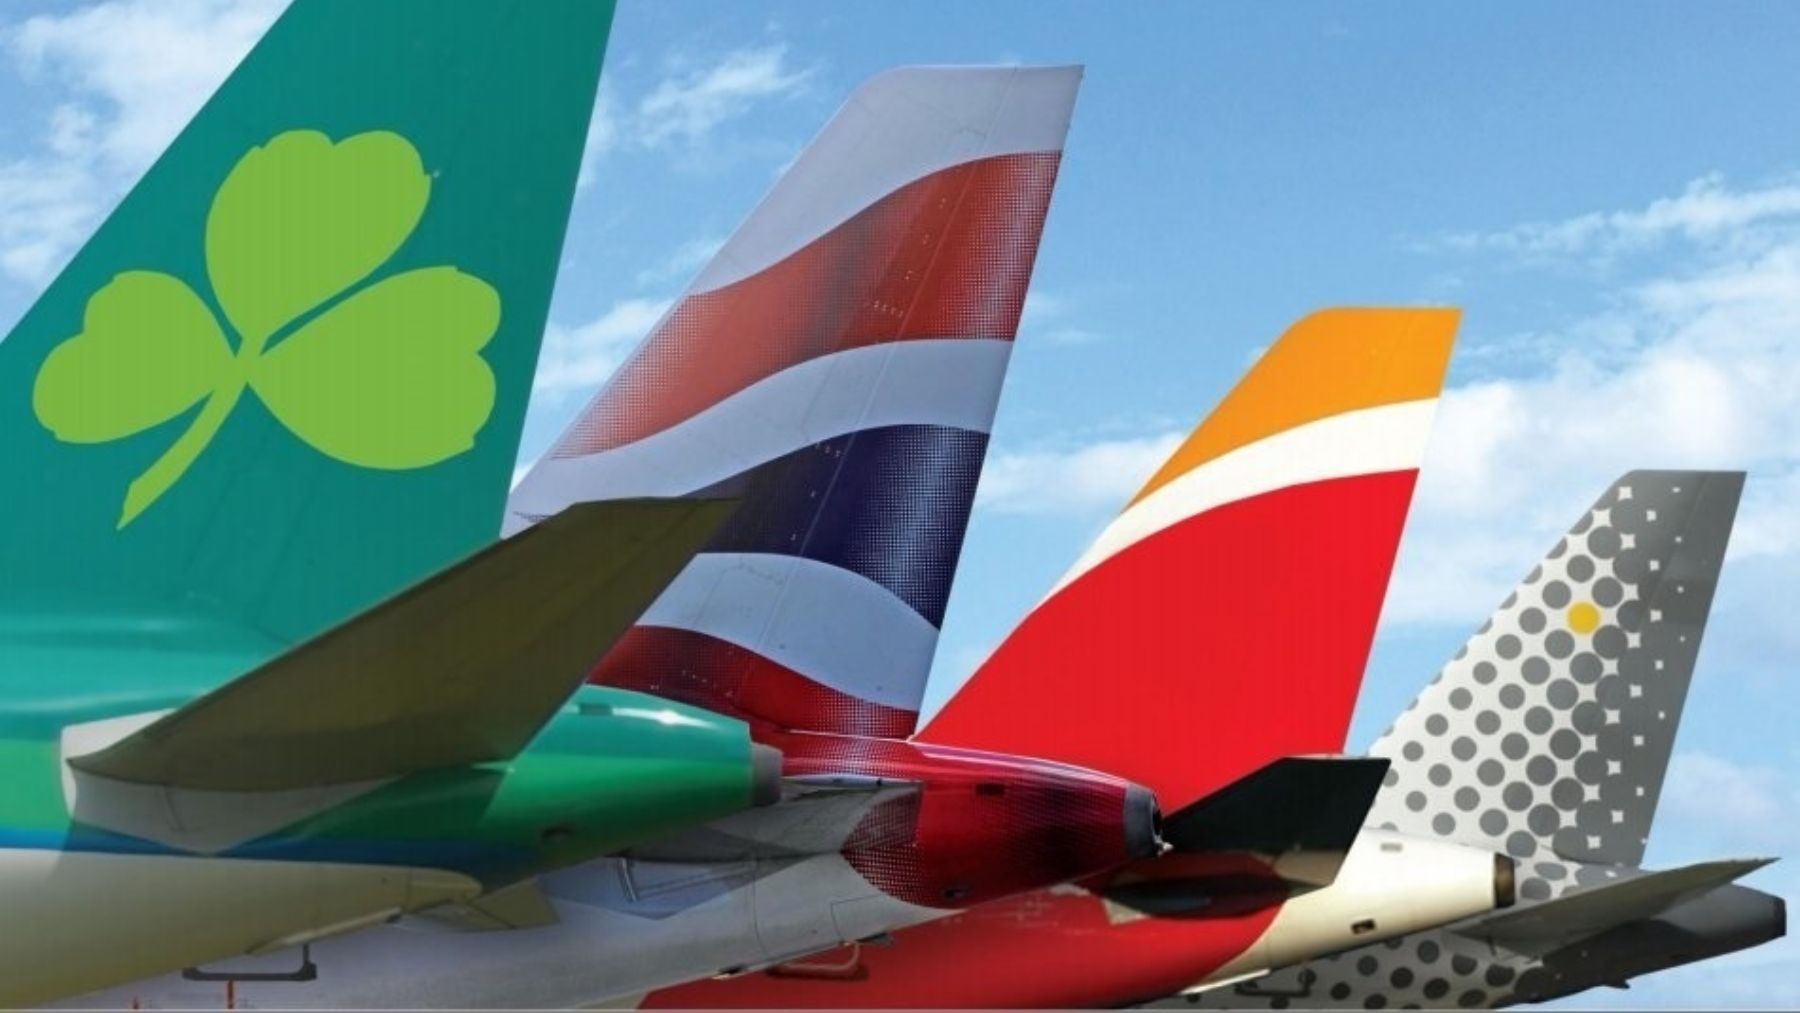 Aviones de Aer Lingus, British Airways, Iberia y Vueling, del grupo IAG.